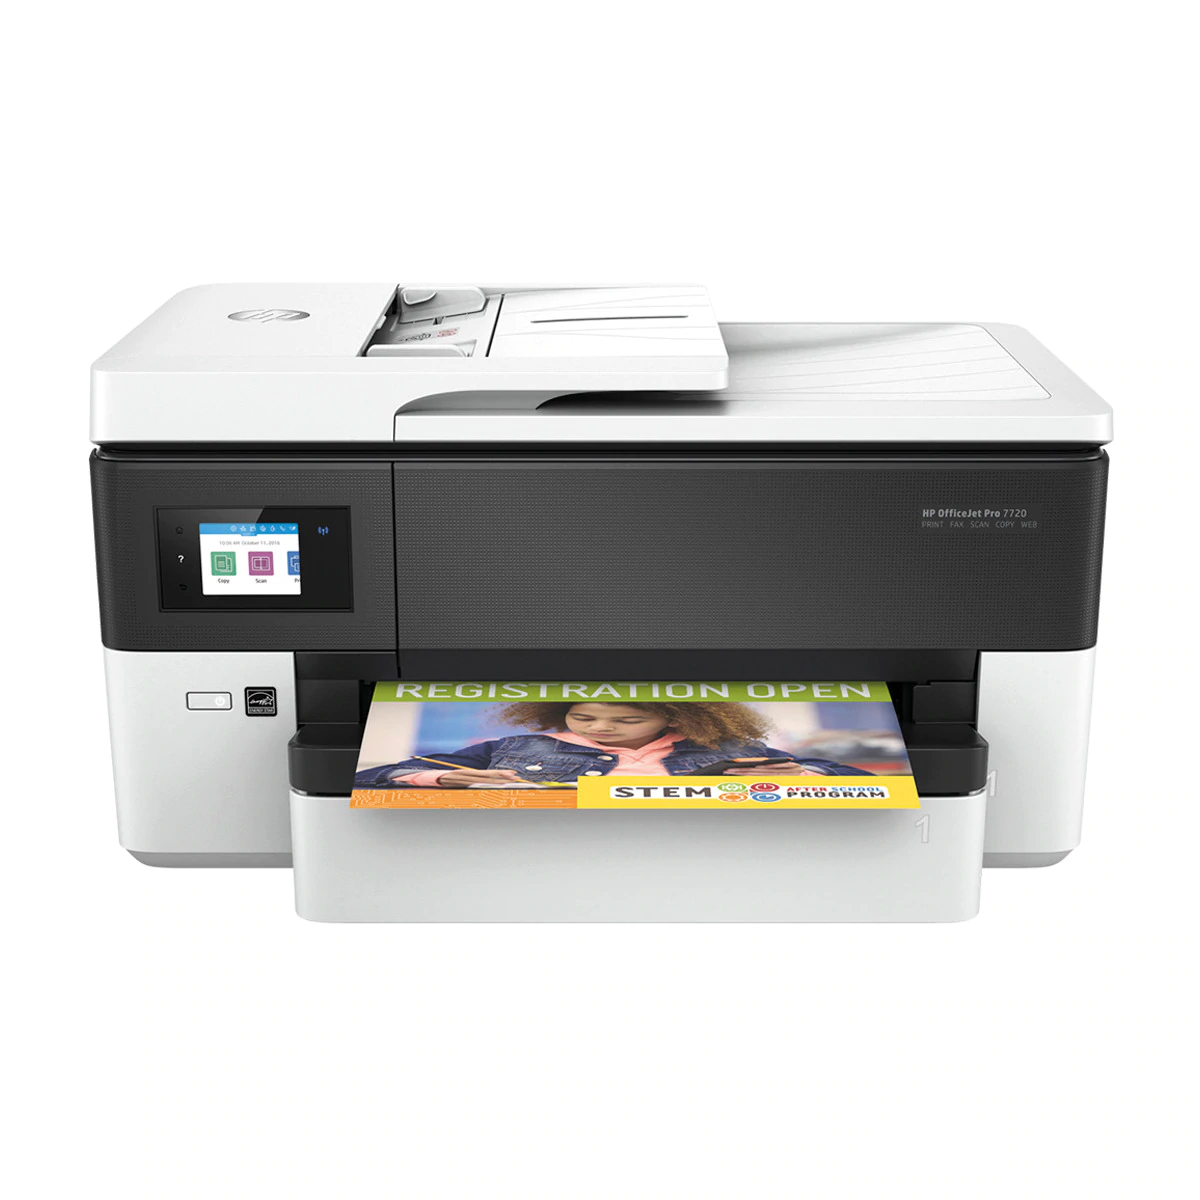 Impresora Multifunción tinta HP OfficeJet Pro 7720, Fax, Wi-Fi, Impresión en A3